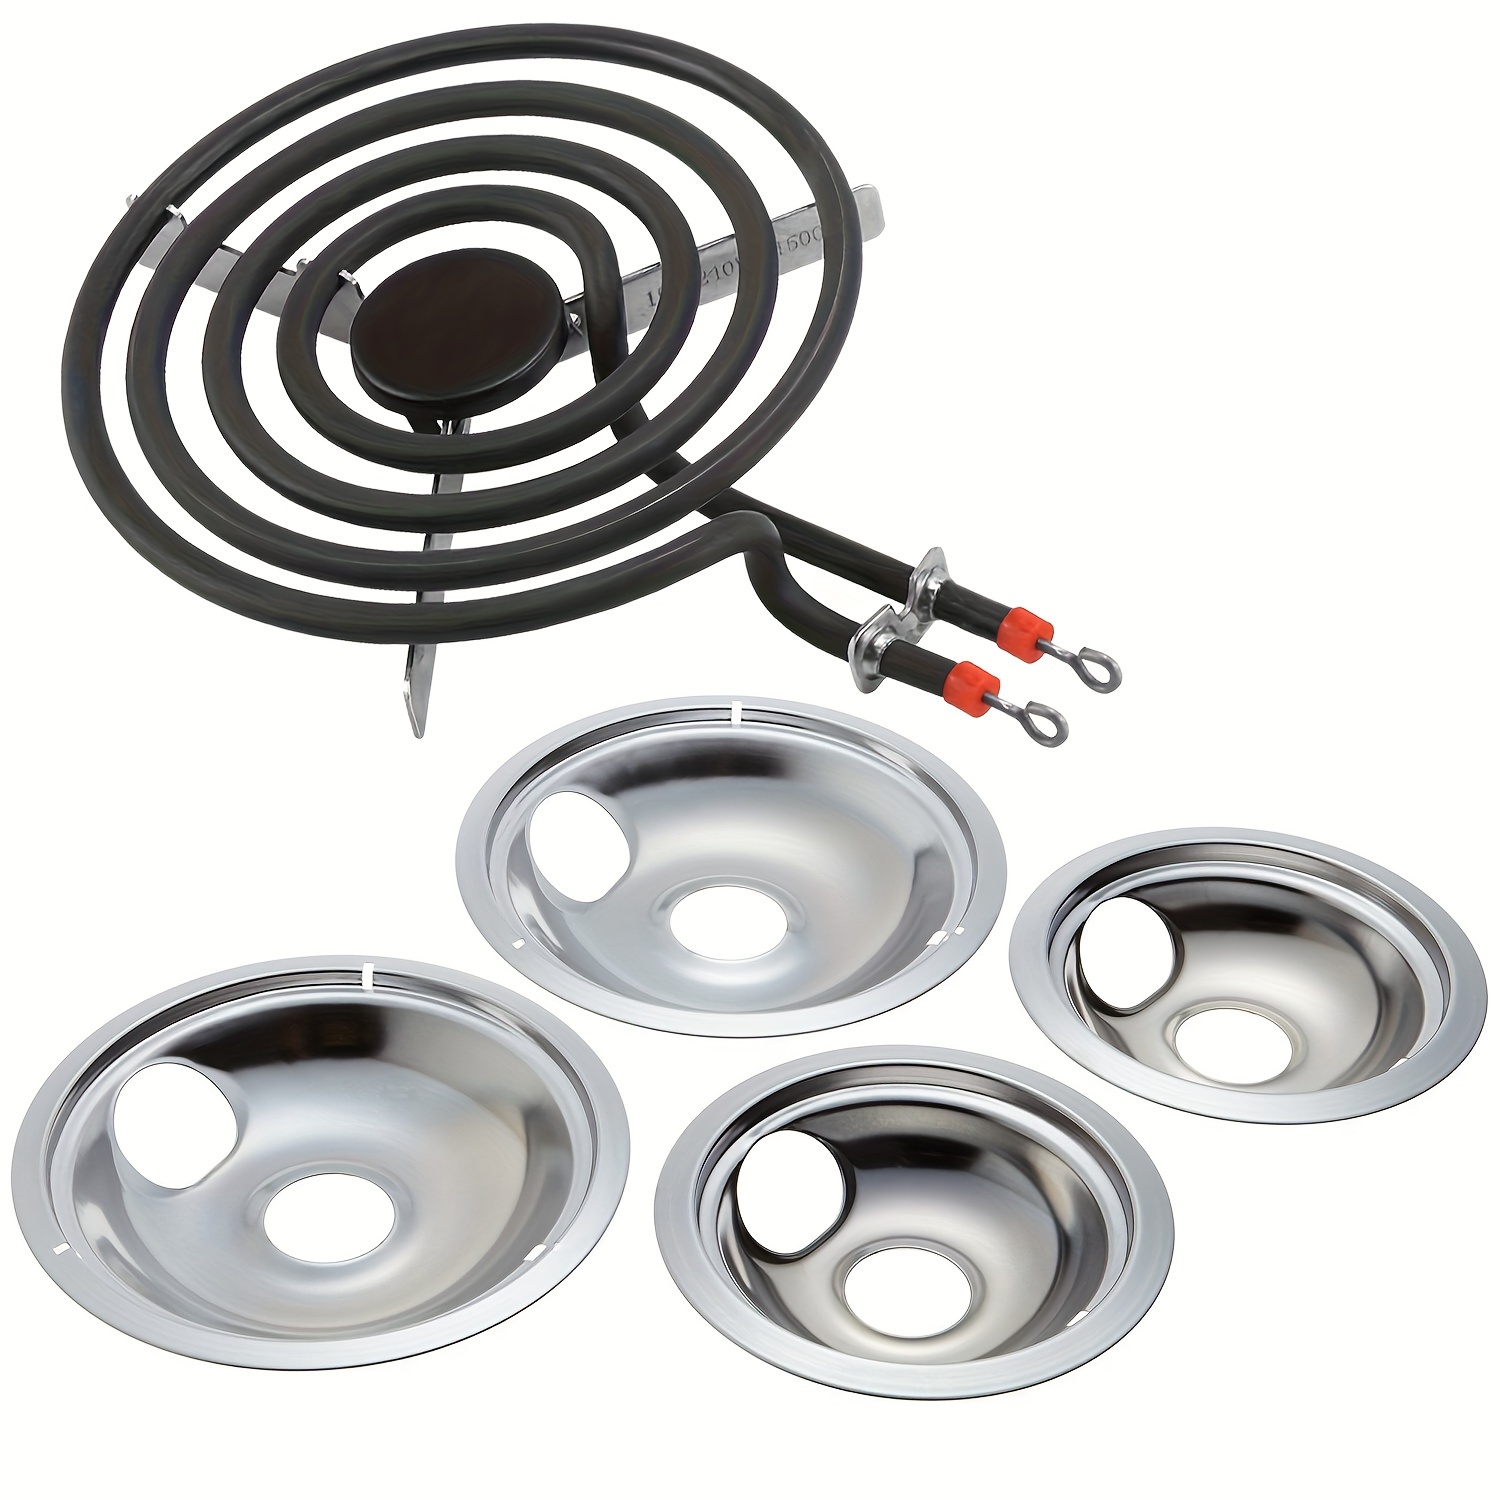  Difusor de calor, placa reductora de llama, adaptador de  inducción de acero inoxidable con mango para cocina de inducción estufa de  gas (9.4 in #), herramientas y accesorios de cocina 